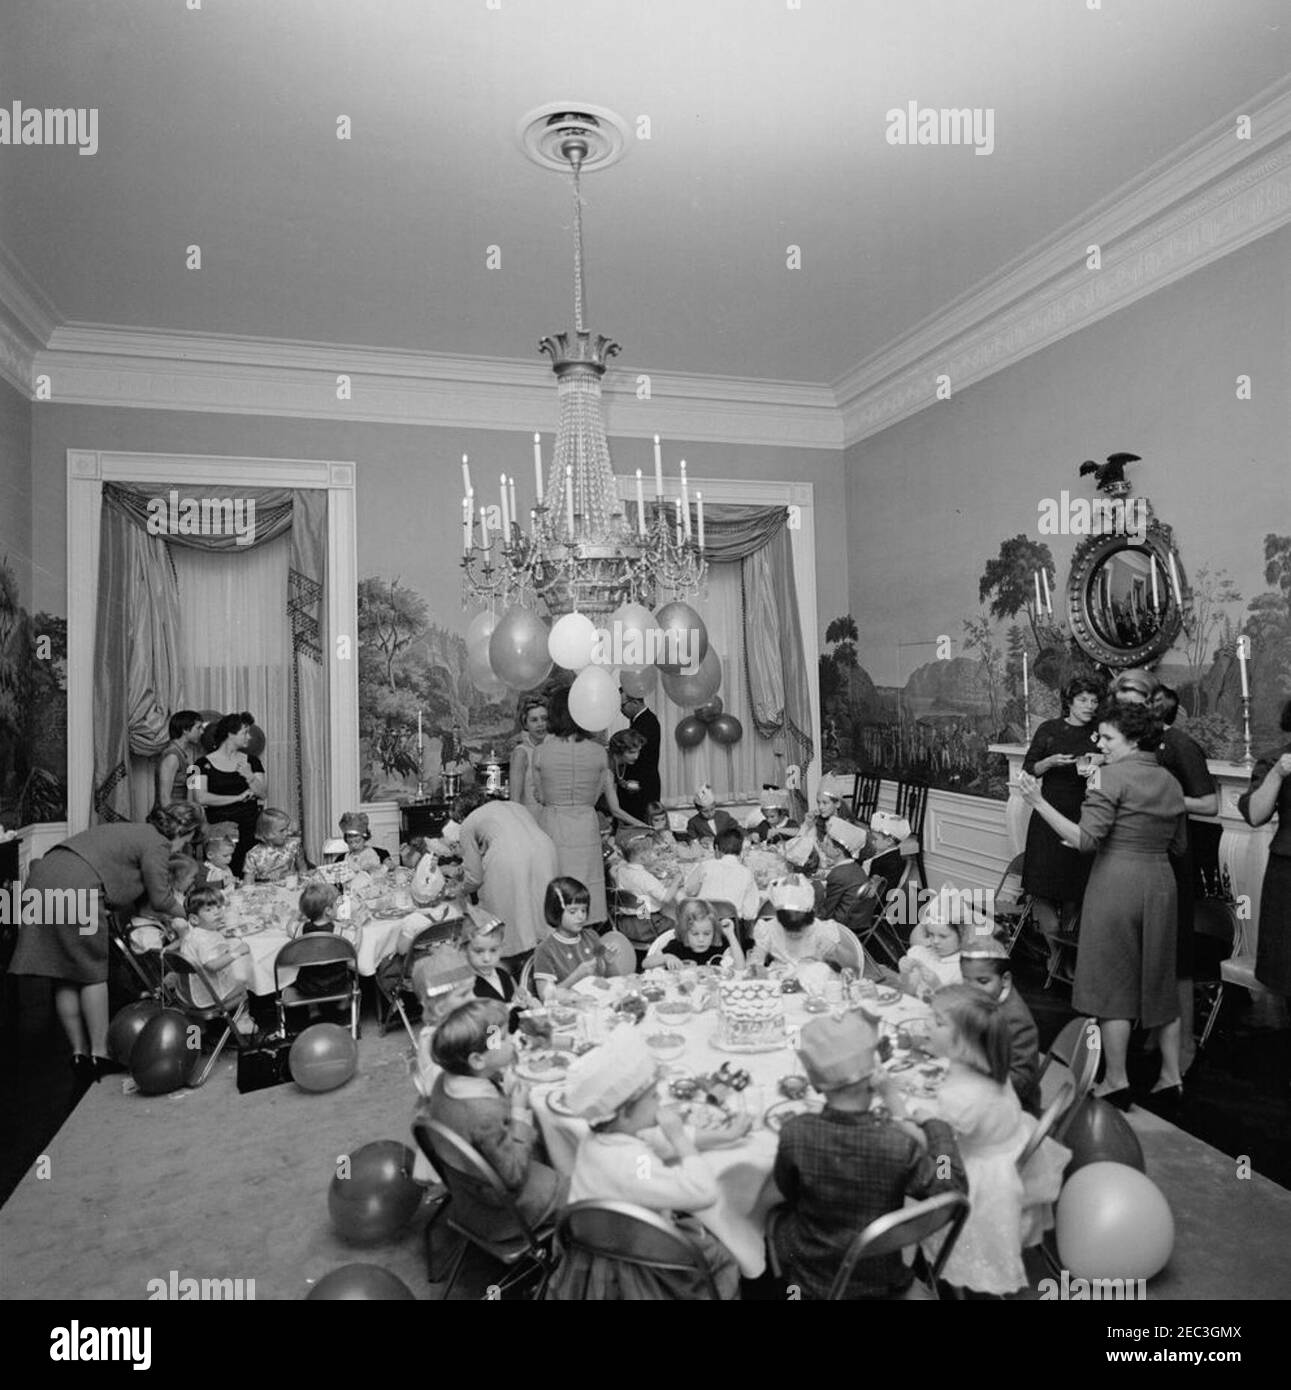 Fête d'anniversaire pour Caroline Kennedy et John F. Kennedy, Jr. De jeunes enfants s'assoient aux tables de la Presidentu2019s Dining Room (Résidence) de la Maison Blanche, Washington, D.C., lors d'une fête d'anniversaire conjointe pour Caroline Kennedy et John F. Kennedy, Jr.; la première dame Jacqueline Kennedy (dos à la caméra) est au centre en arrière-plan. Caroline (à droite) est assise à une table en premier plan avec Maria Shriver (assise au centre, tenant une lipop) et Avery Hatcher, fils du secrétaire de presse associé, Andrew T. Hatcher (assis à droite de Caroline, partiellement caché); John, Jr. (À gauche, faisant face à la caméra), est assis à tabl Banque D'Images